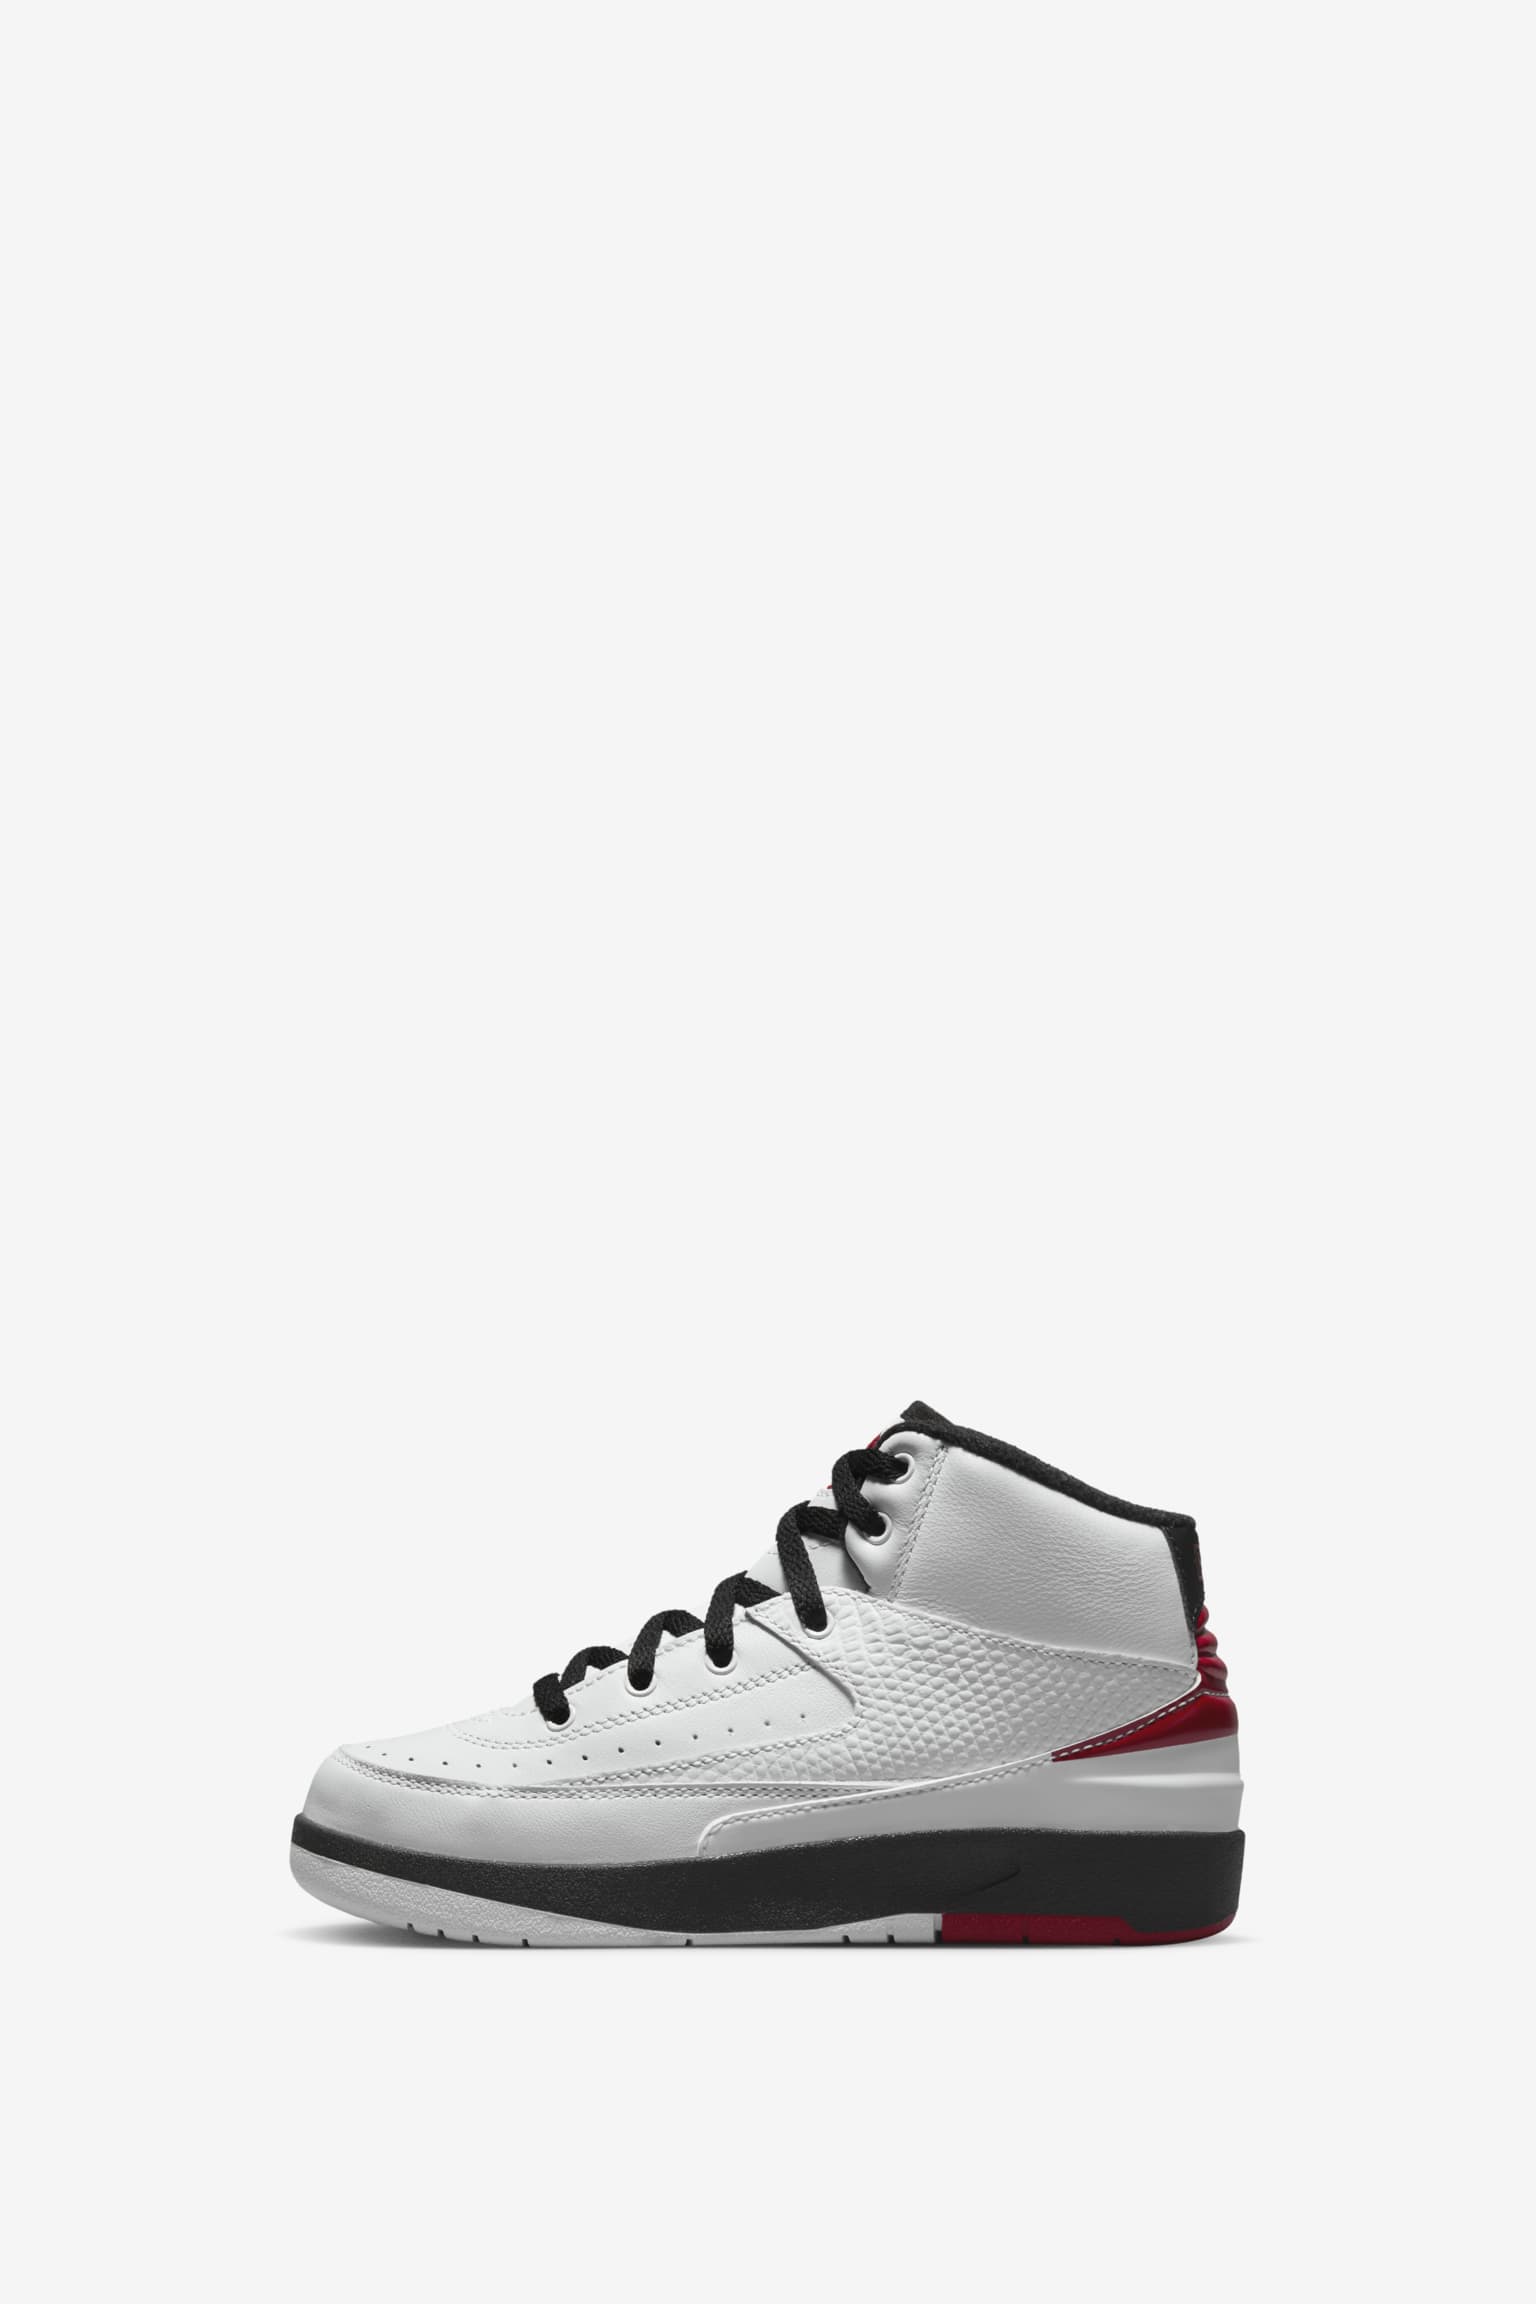 Nike Air Jordan 2 OG "Chicago"